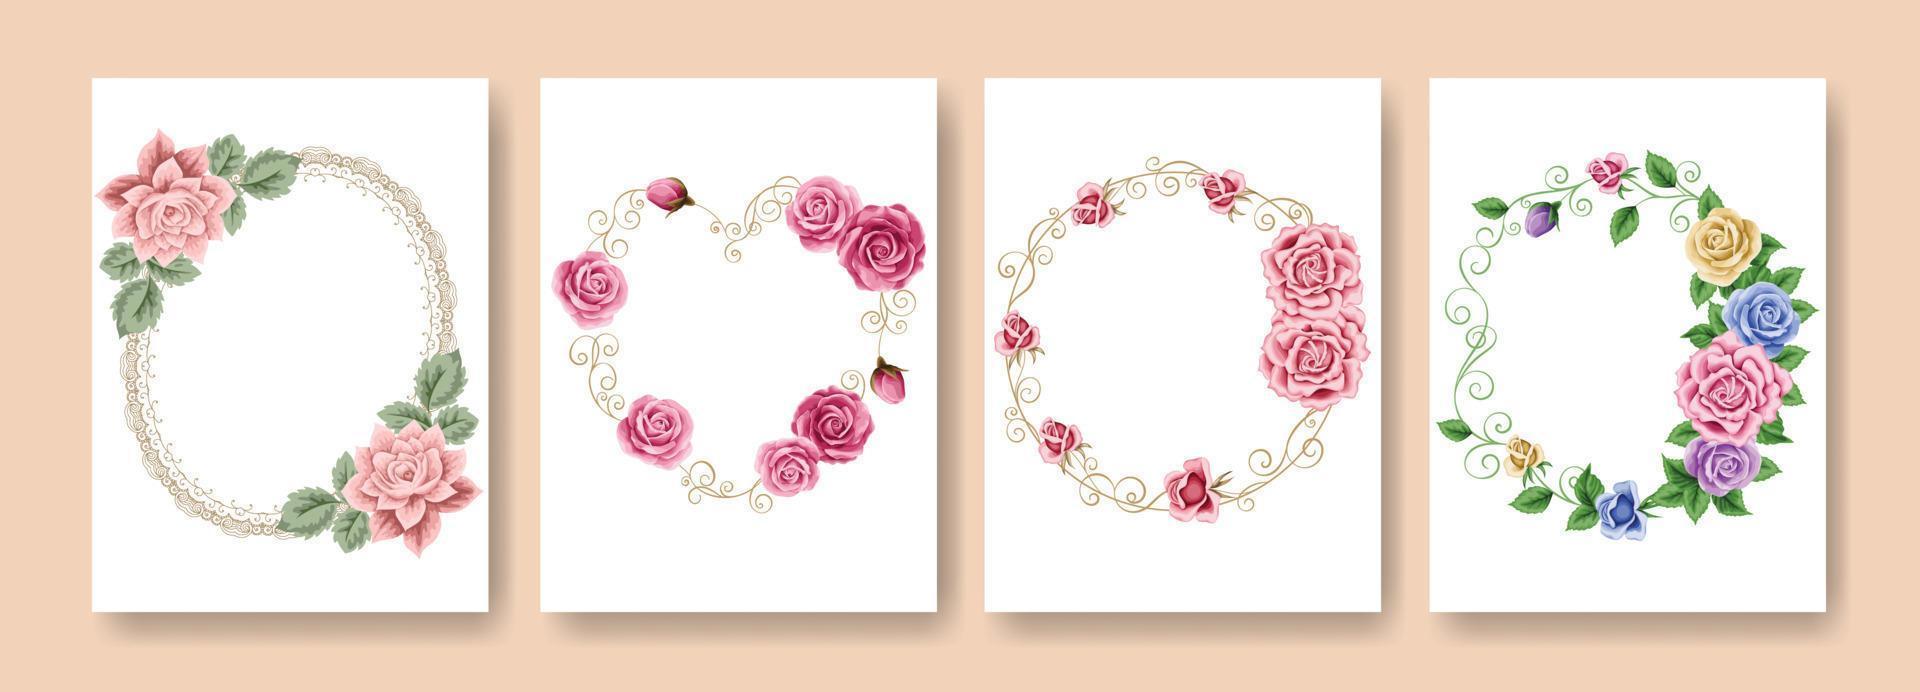 blumenkonzept gruß- und einladungskartenset mit rosa hintergrund. Ideal für Hochzeitsfeiern, Frauentagsfeiern und mehr. Hintergrund des Frühlingskunstkonzepts vektor